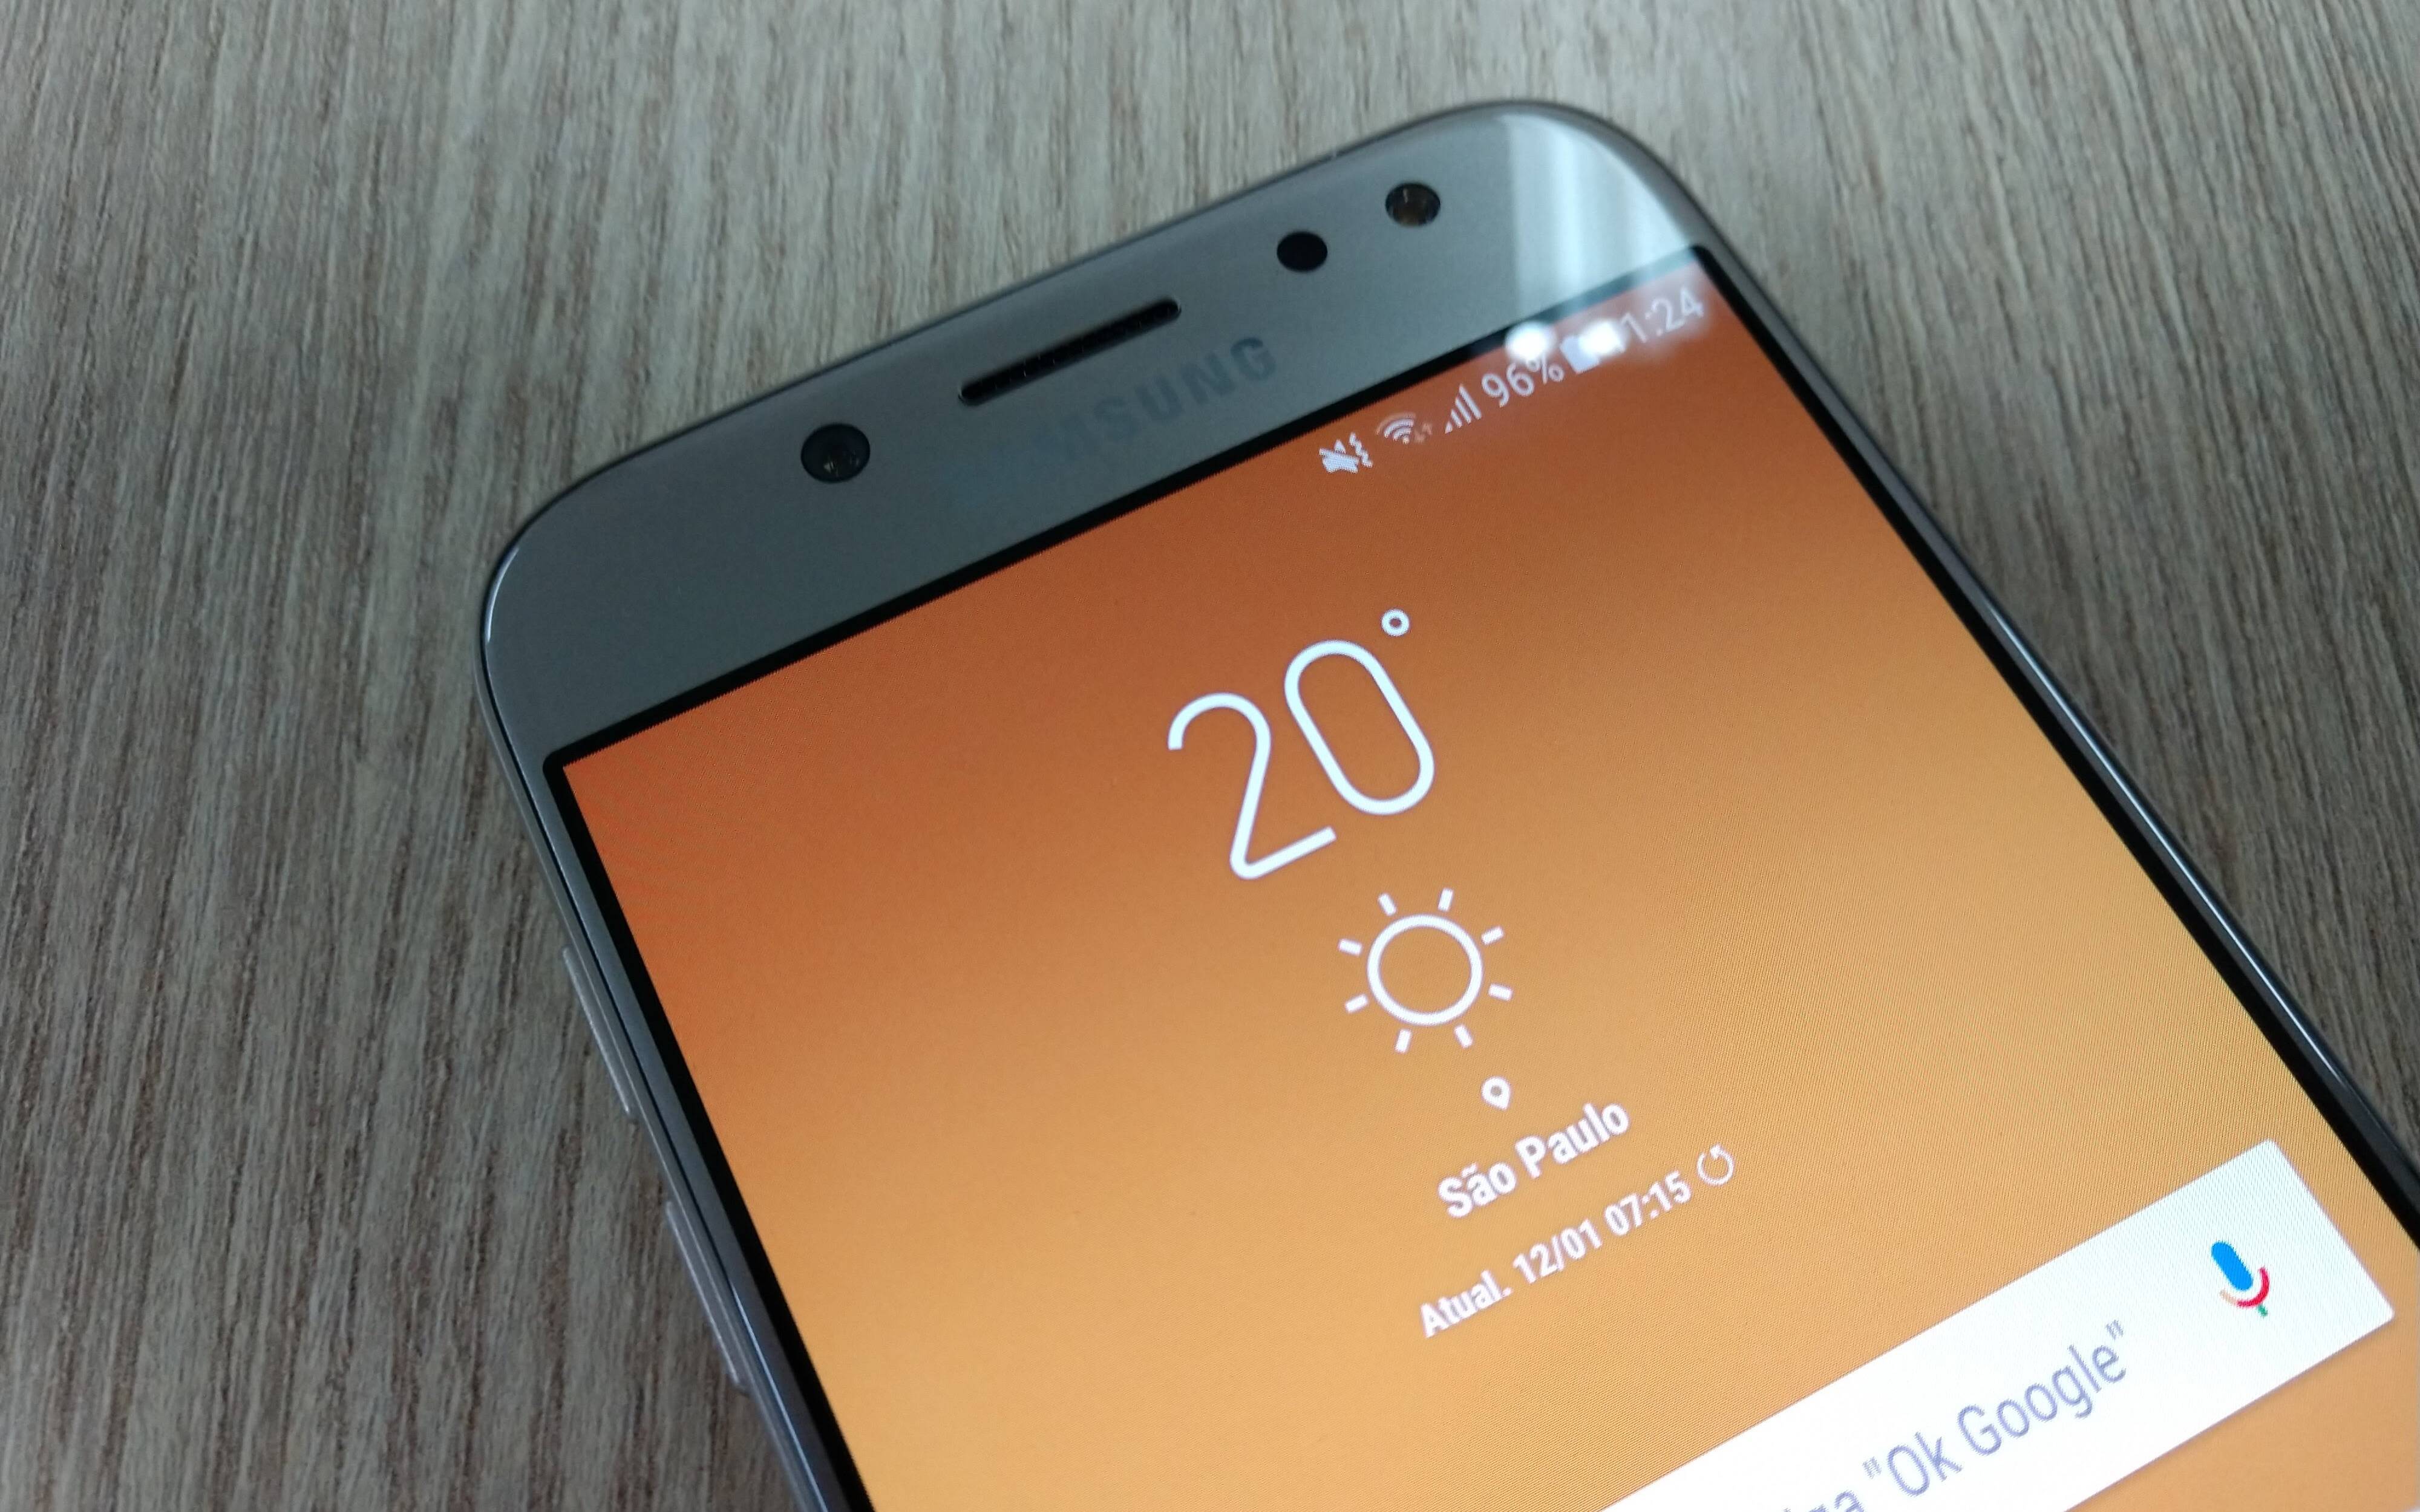 Galaxy J5 Pro em detalhes: saiba preço, prós e contras do celular Samsung